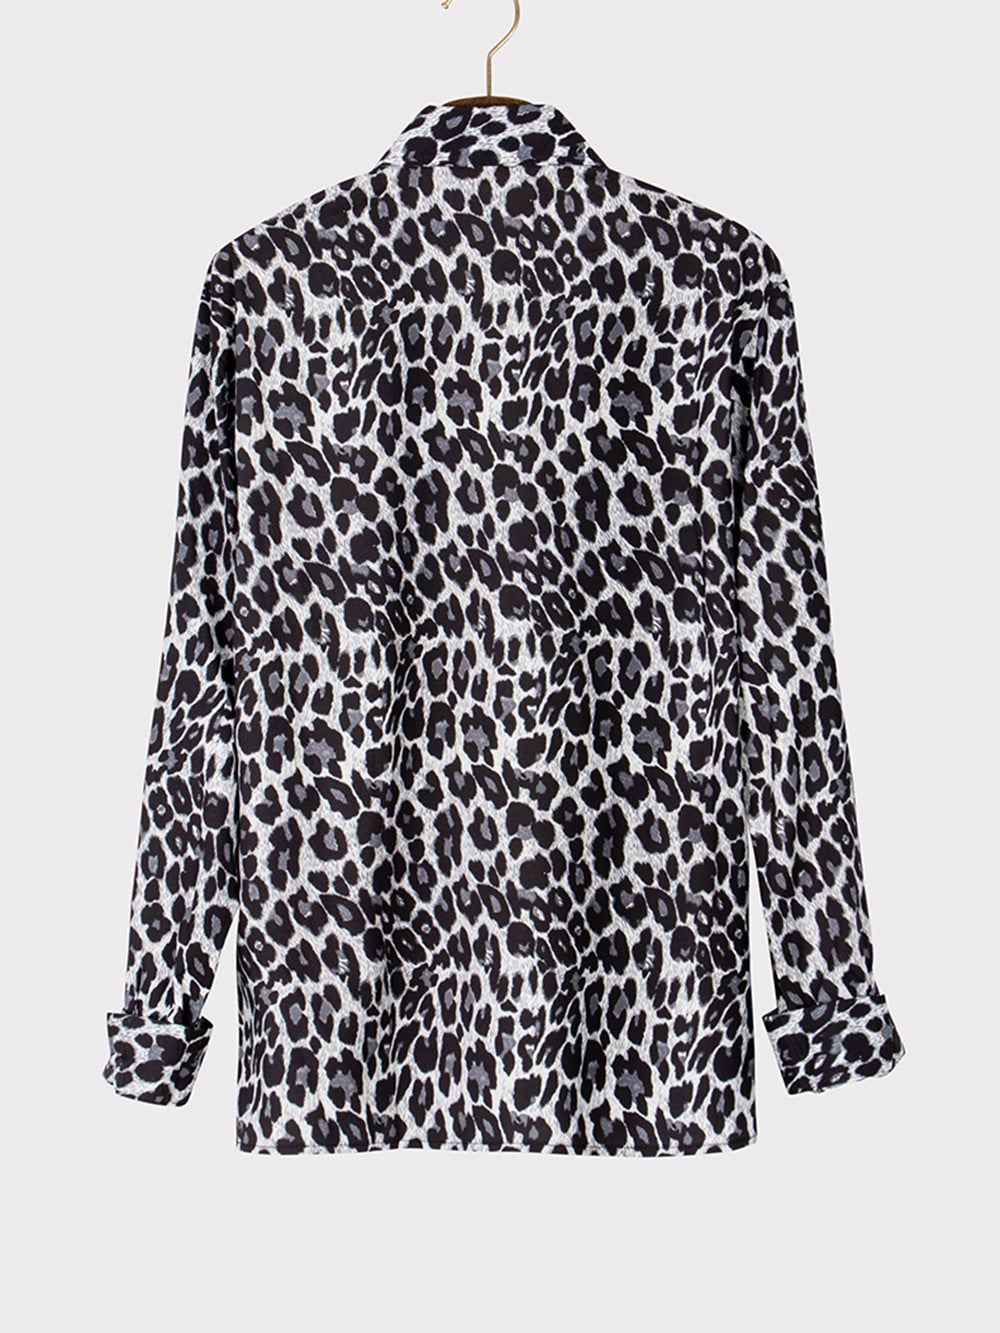 Men's Shirt Leopard Print Long Sleeve Shirt